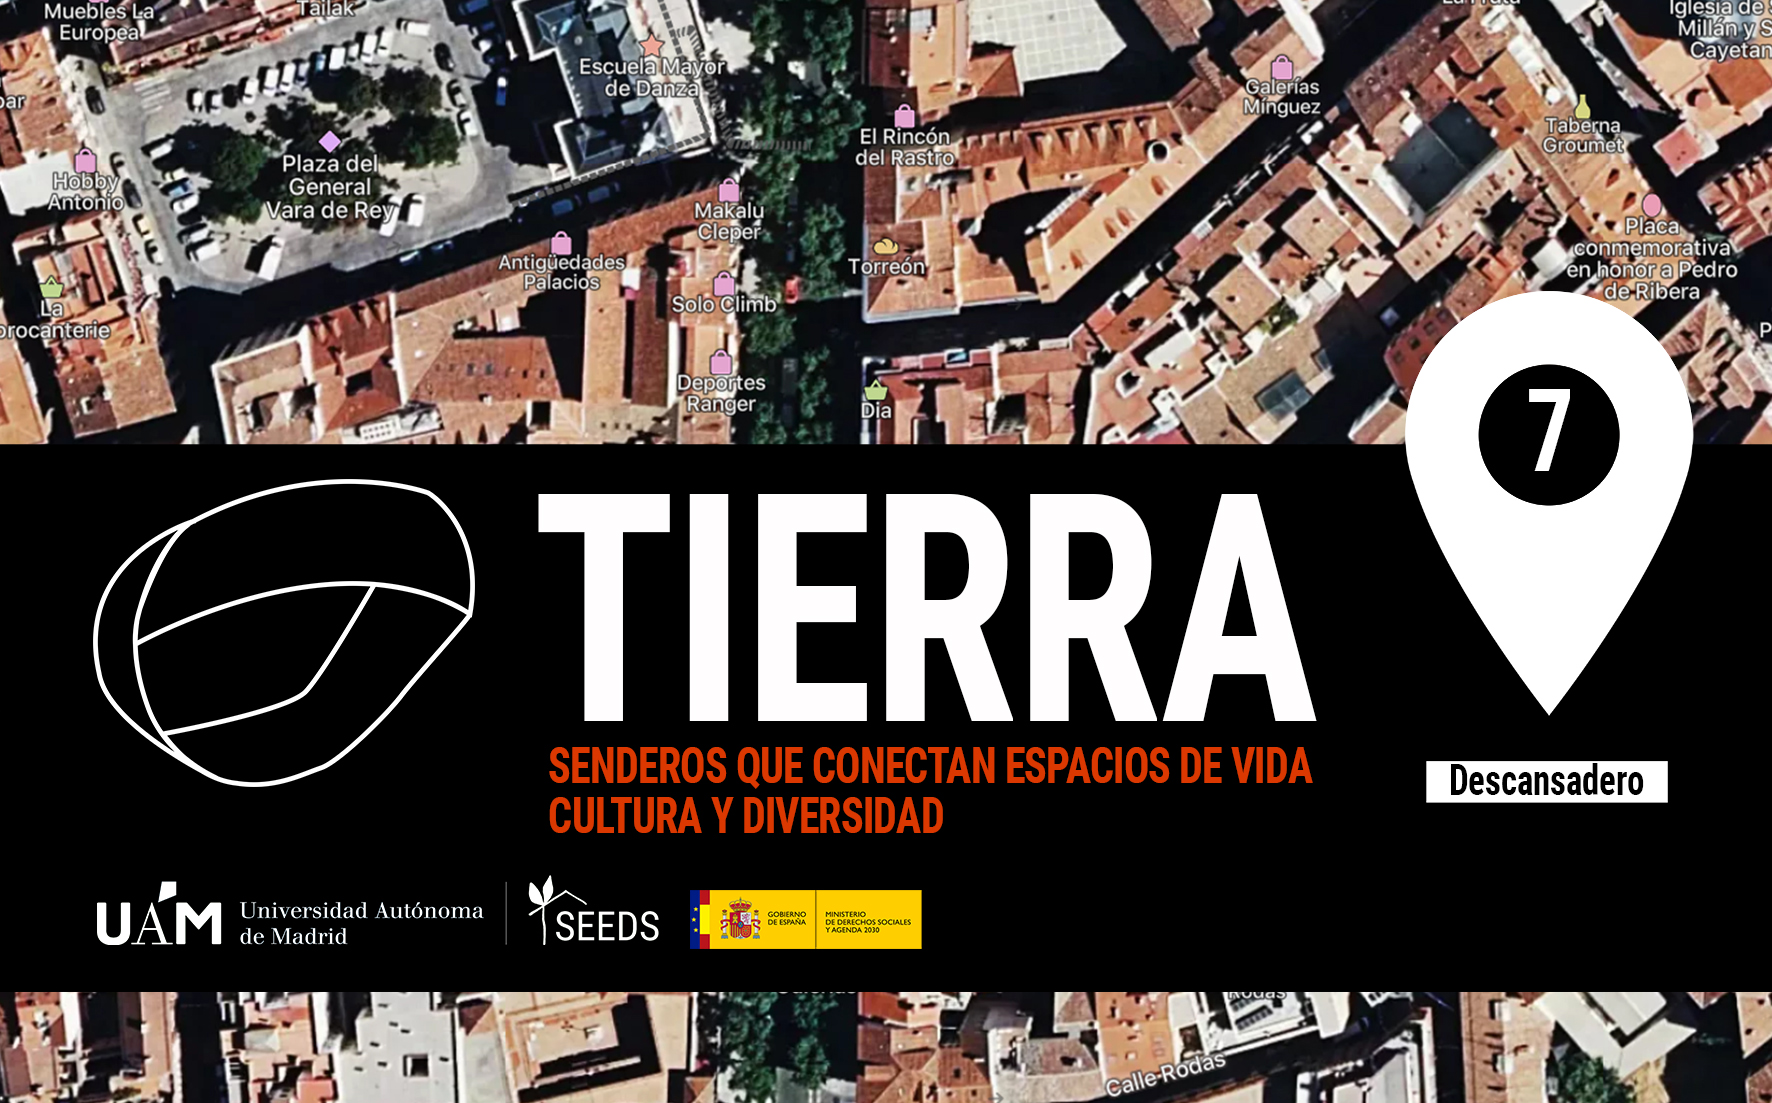 TIERRA: Descansadero 7_Senderos que conectan vida cultura y diversidad